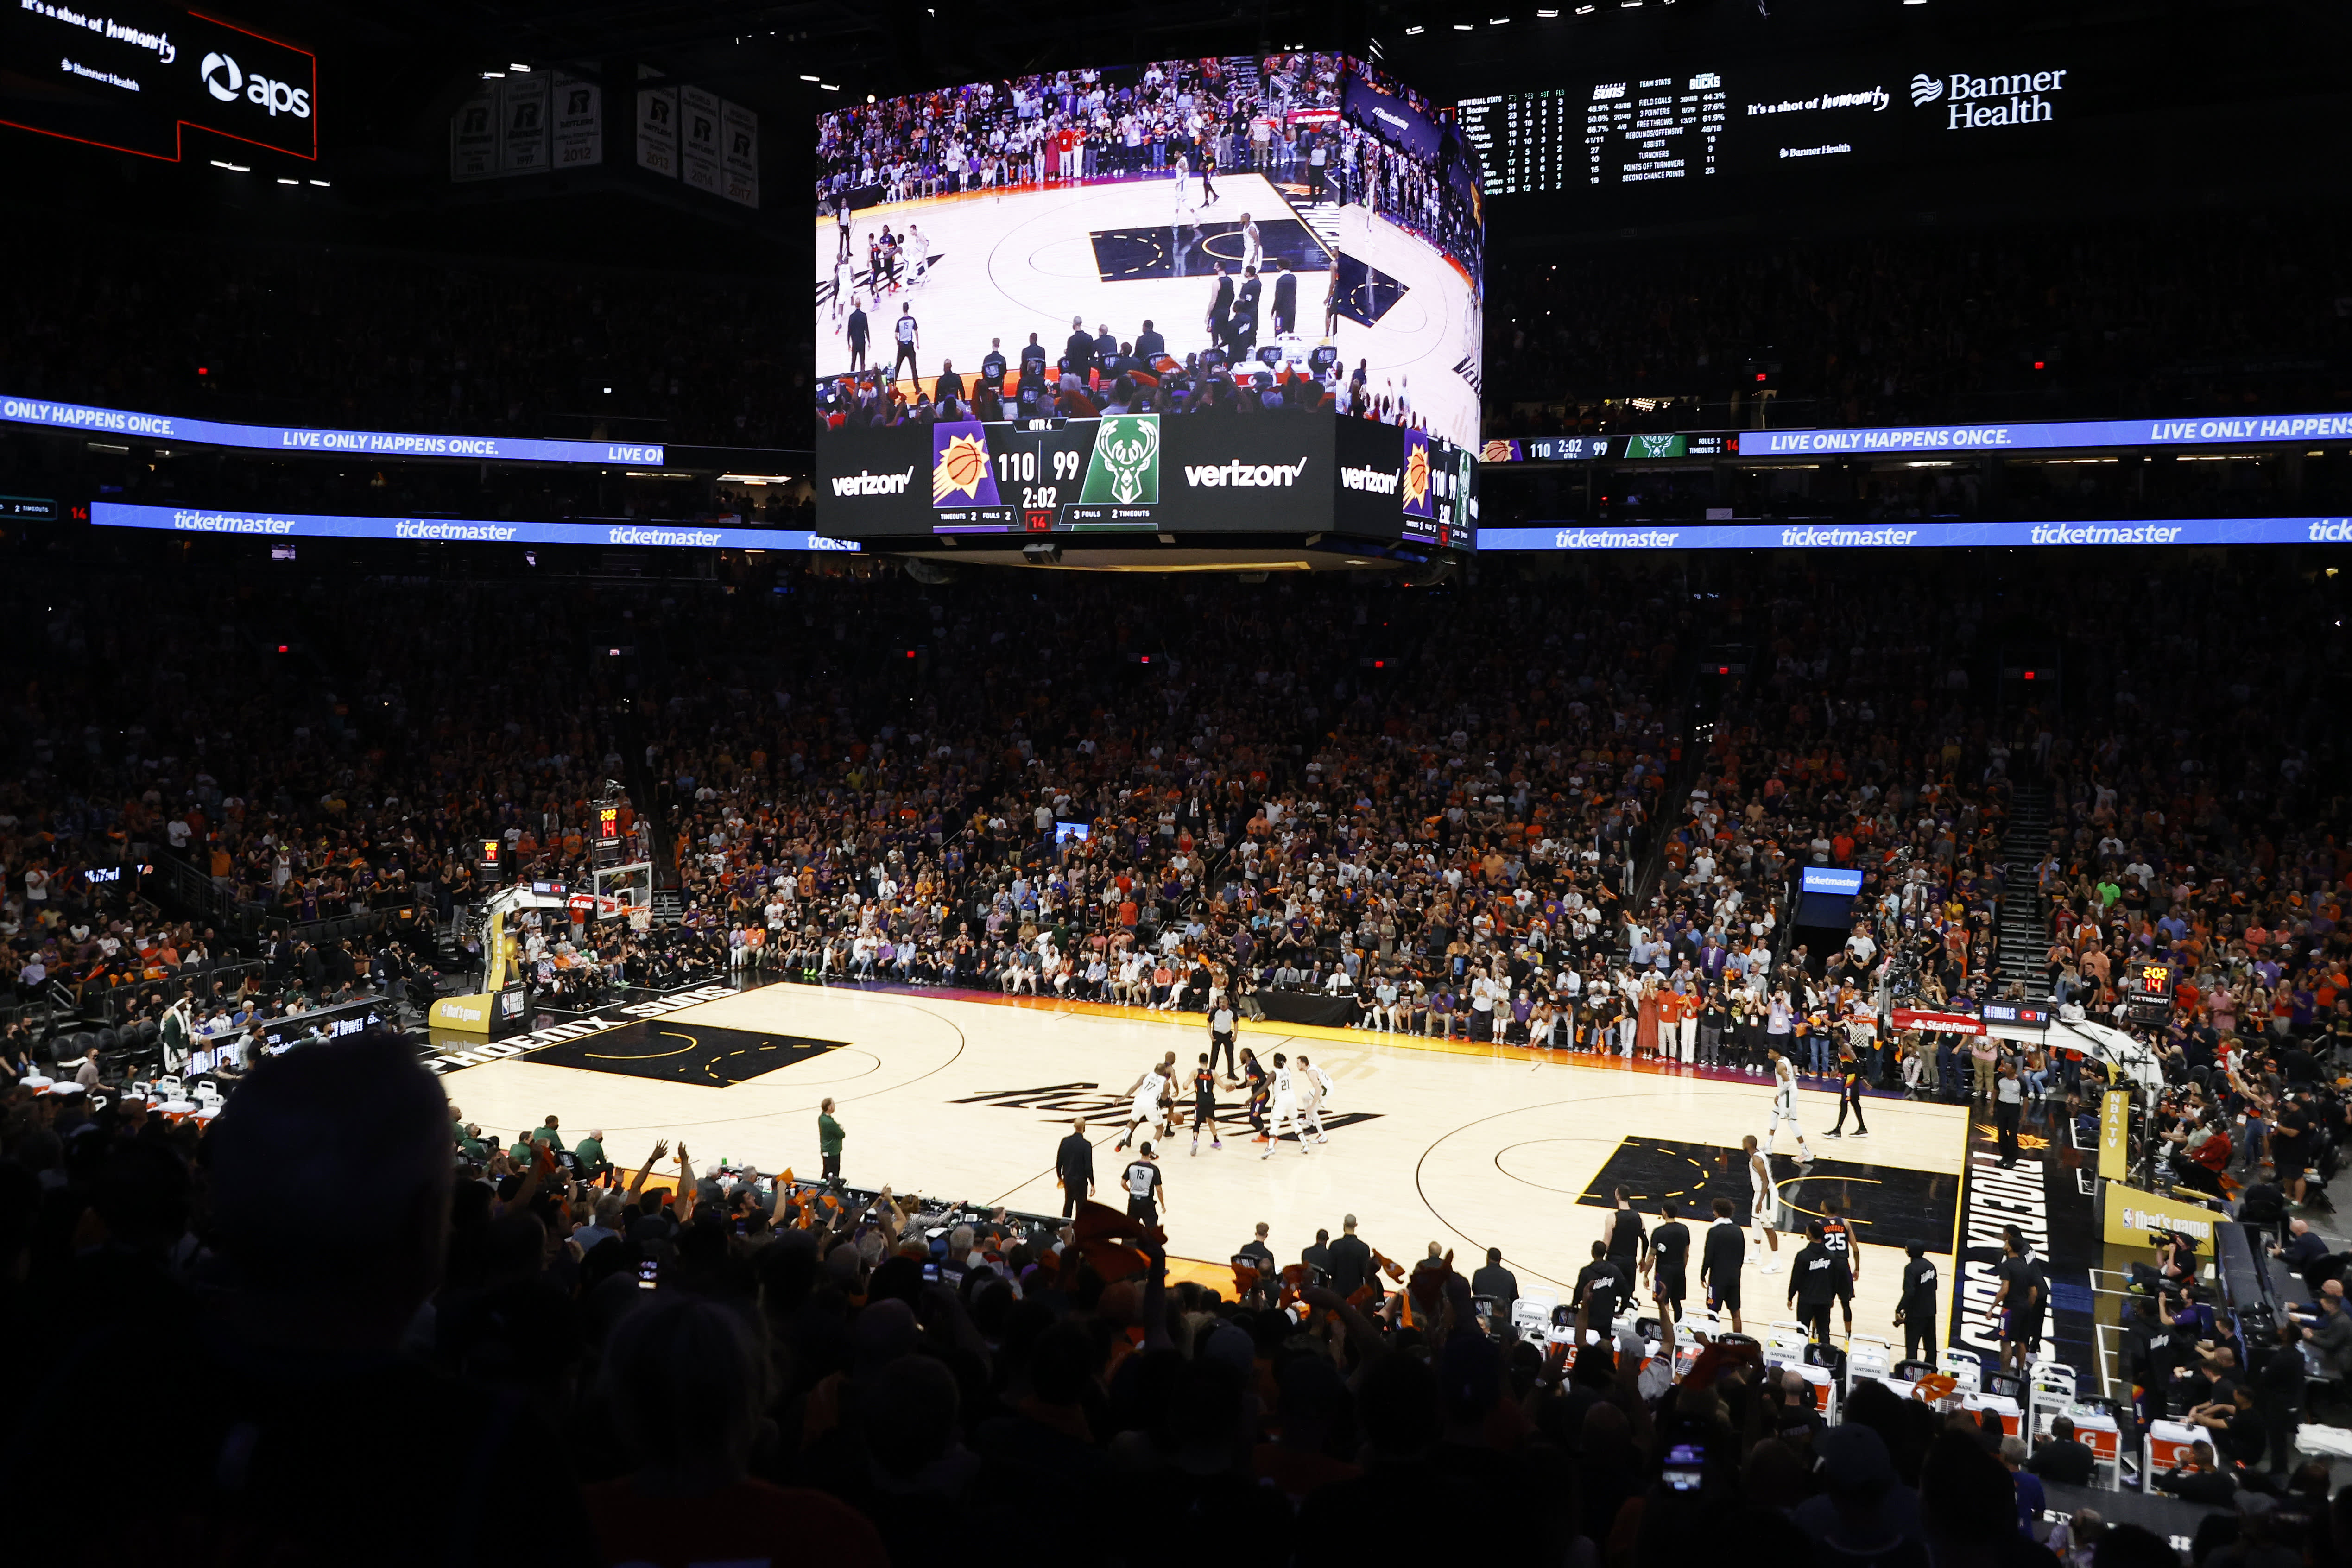 US bankruptcy judge blocks NBA team Phoenix Suns' new TV deal